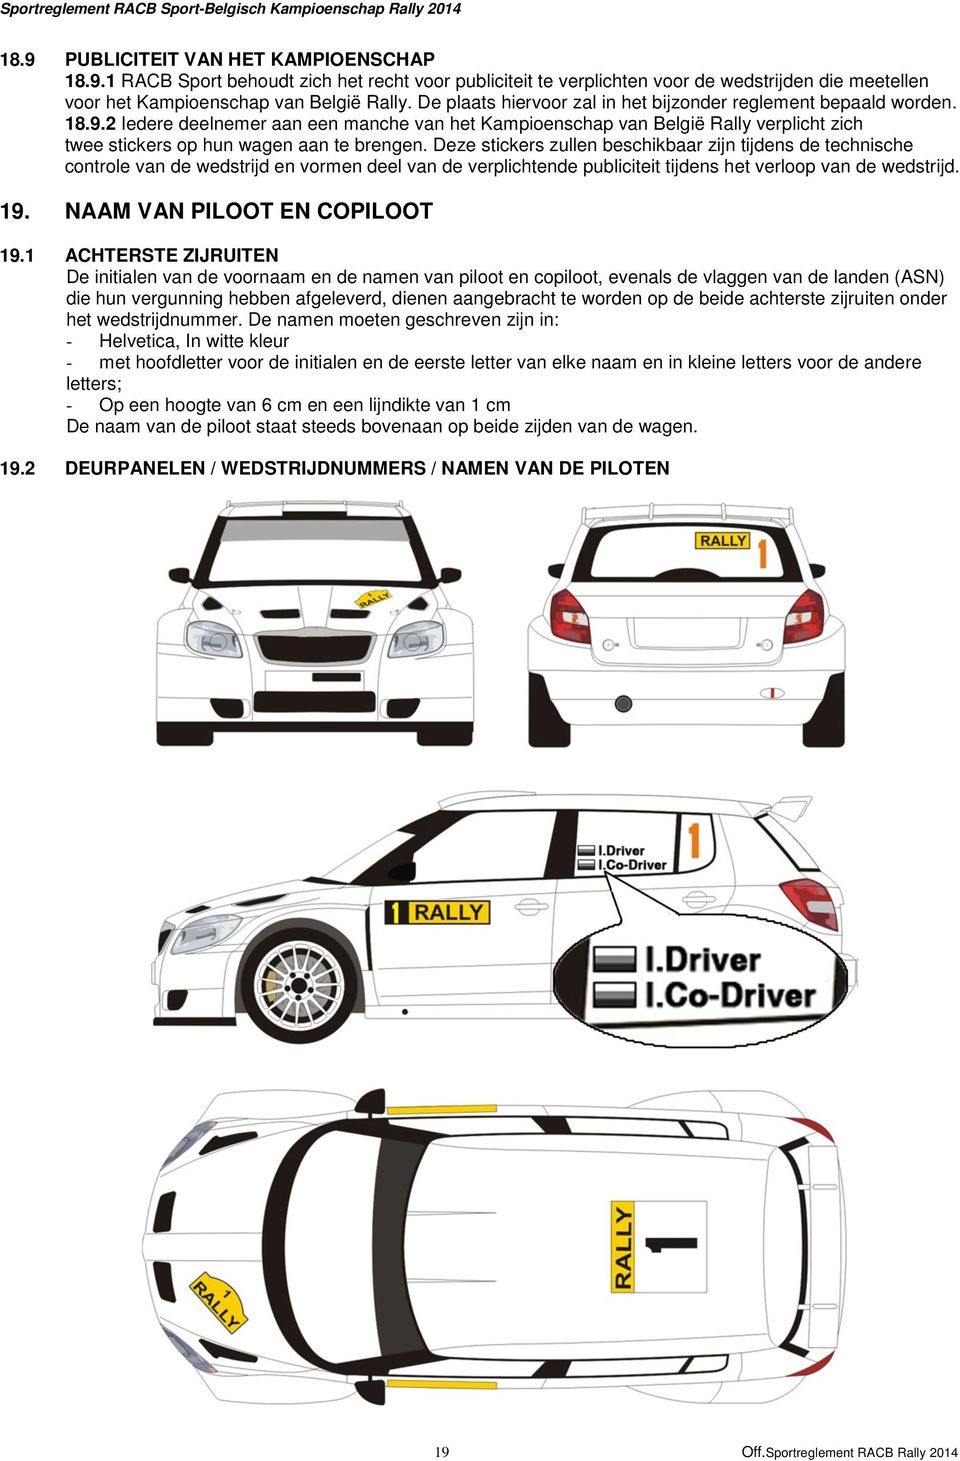 2 Iedere deelnemer aan een manche van het Kampioenschap van België Rally verplicht zich twee stickers op hun wagen aan te brengen.